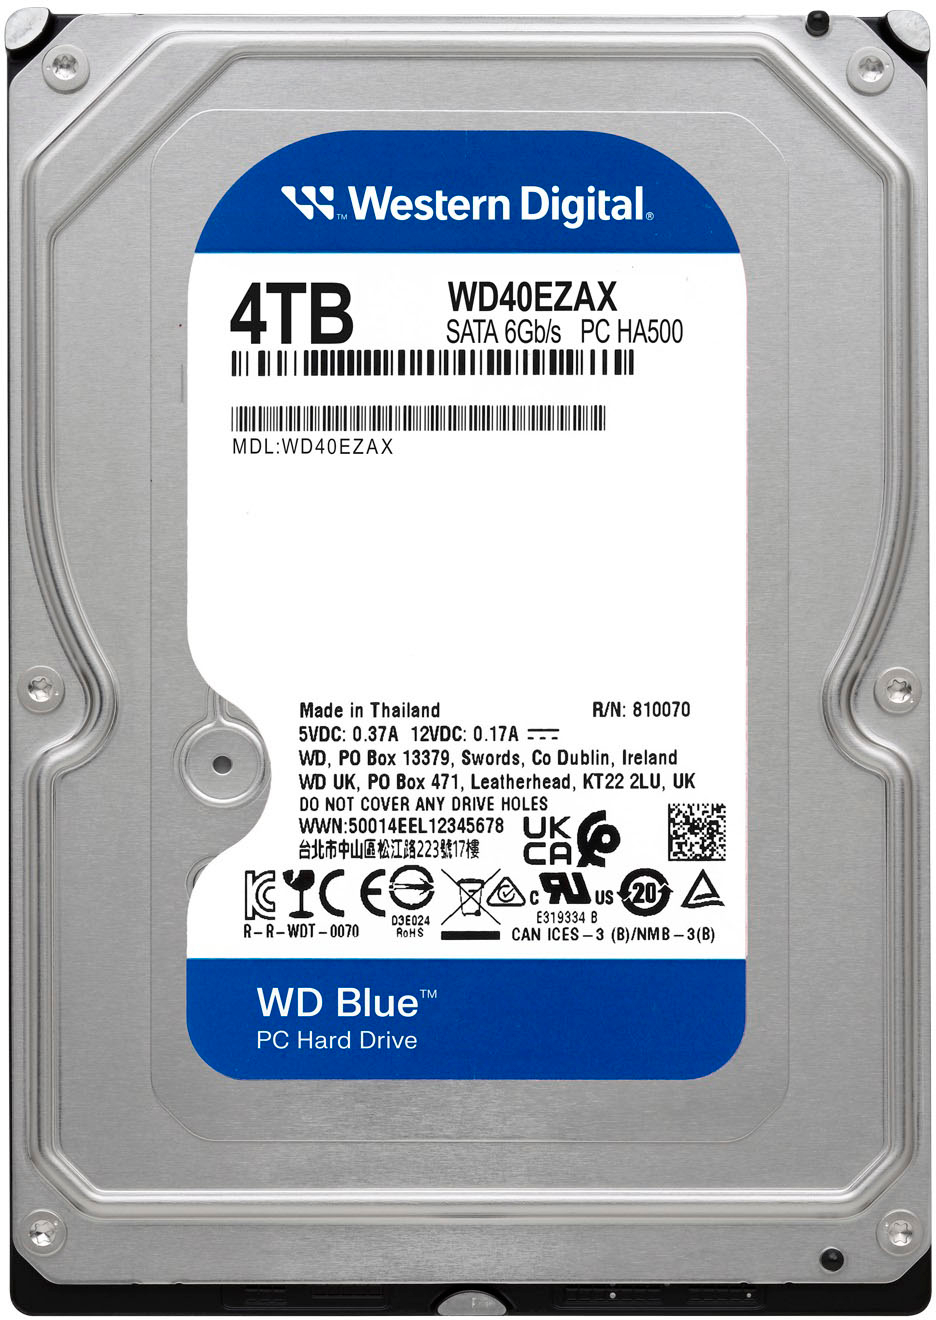 Buy Western Digital WD20EZAZ 2TB Internal Hard Drive (Blue) at